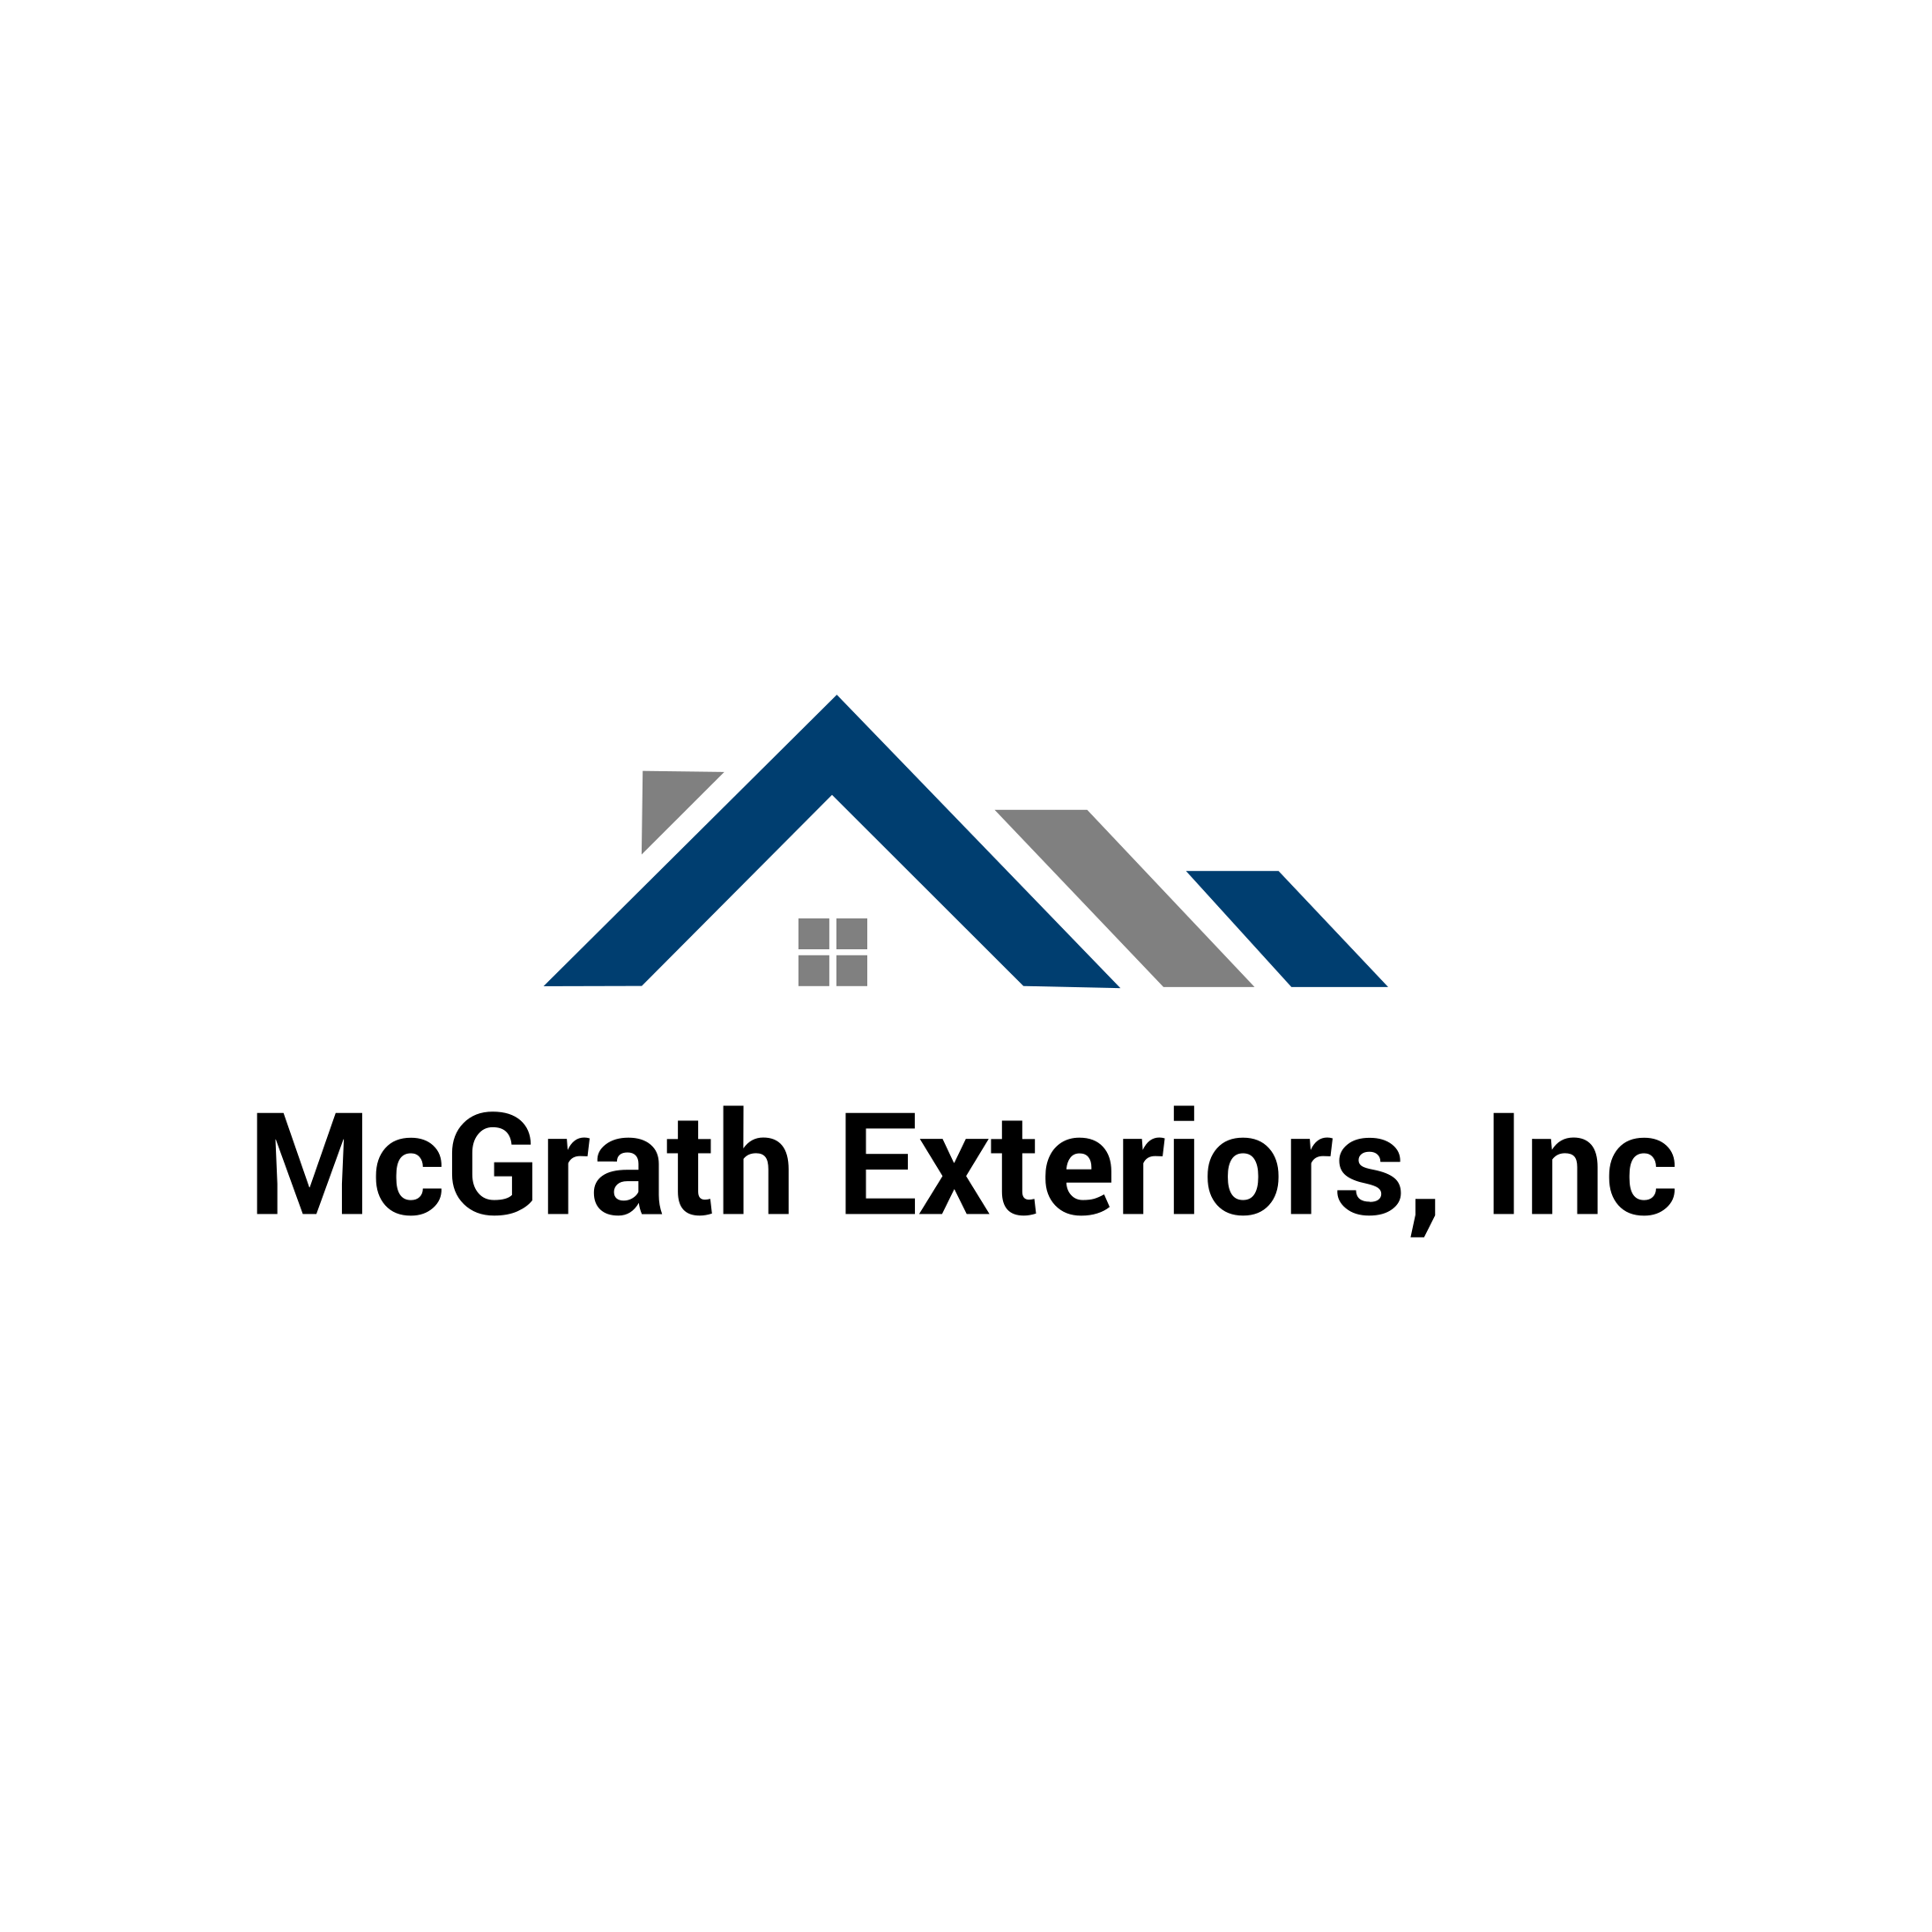 McGrath Exteriors, Inc